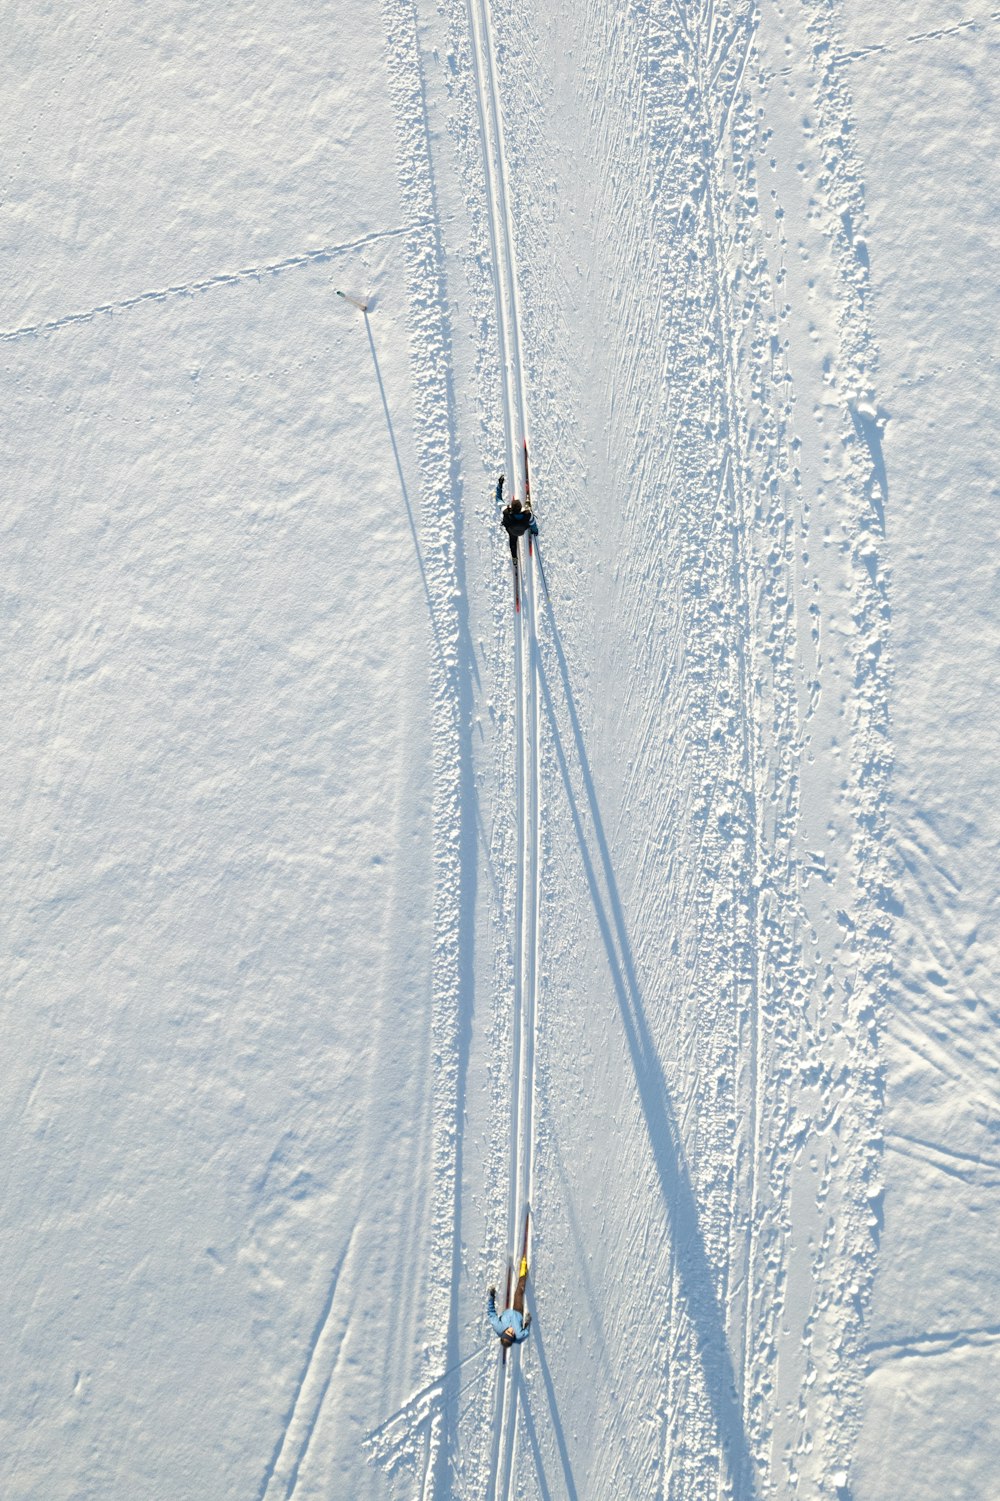 Un par de personas montando esquís por una pendiente cubierta de nieve